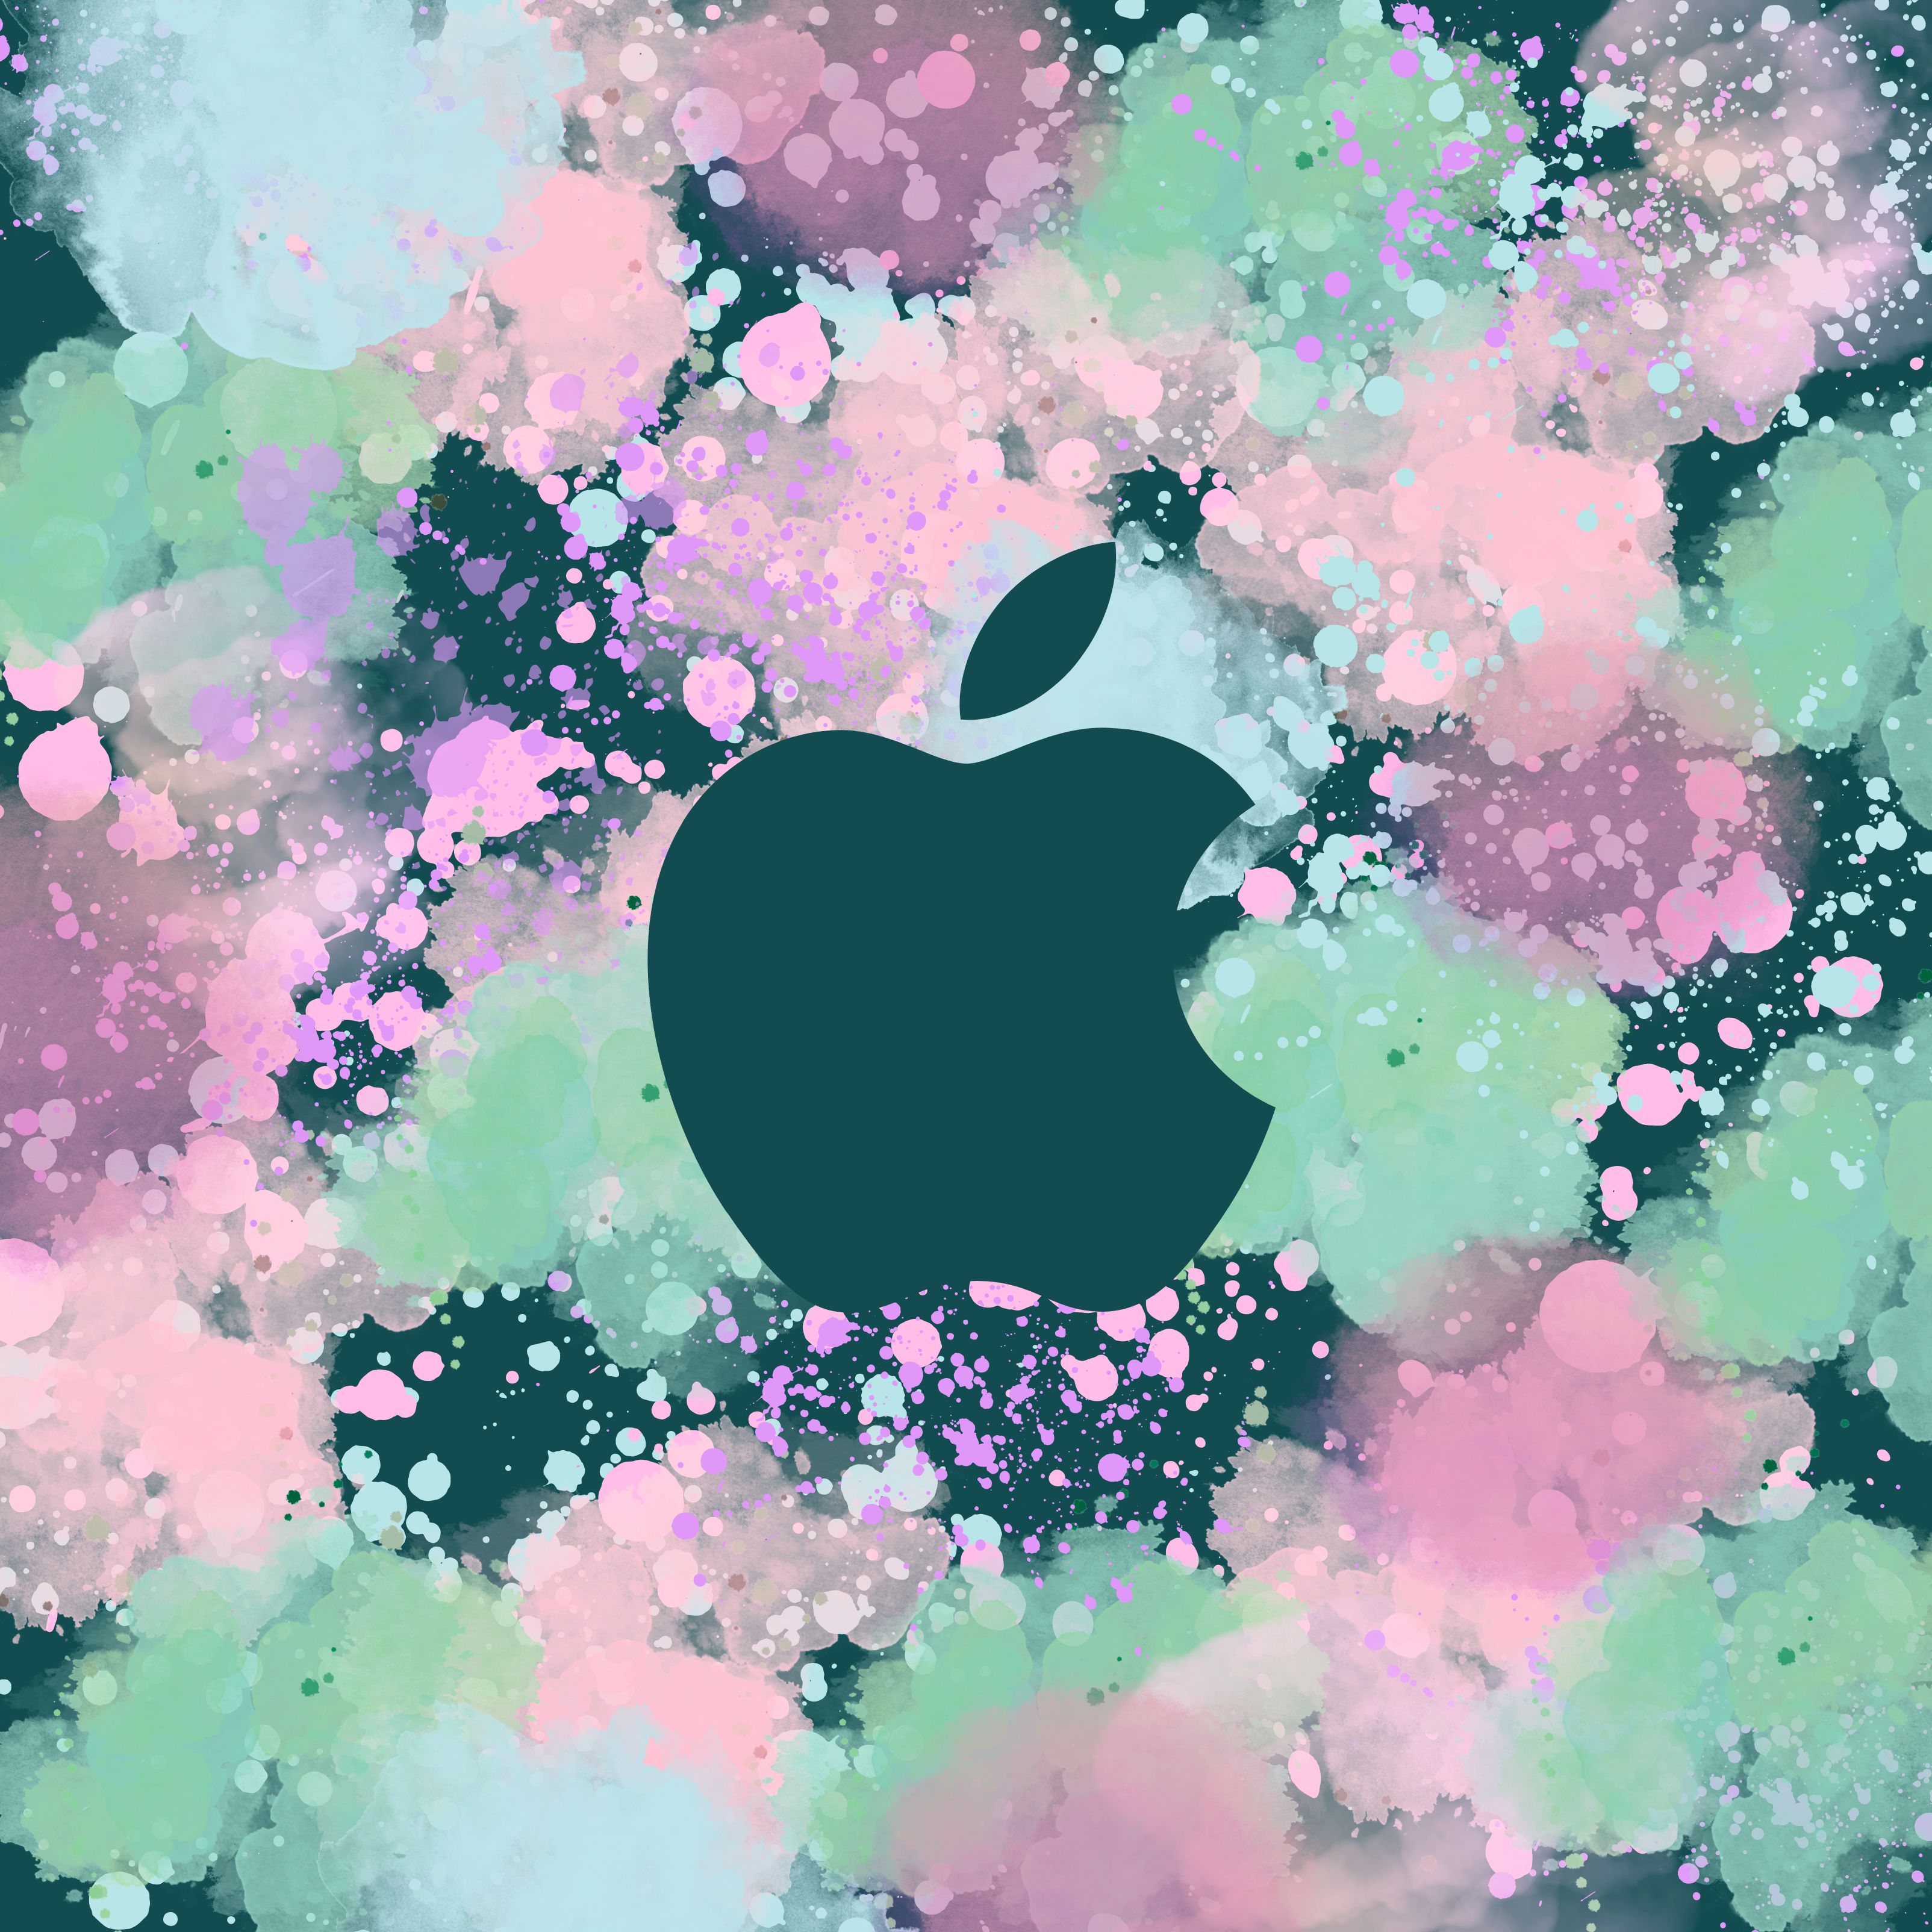 3208x3208 iPad Pro wallpaper 4k Pastel Watercolour Apple Ipad Wallpaper 3208x3208 pixels resolution